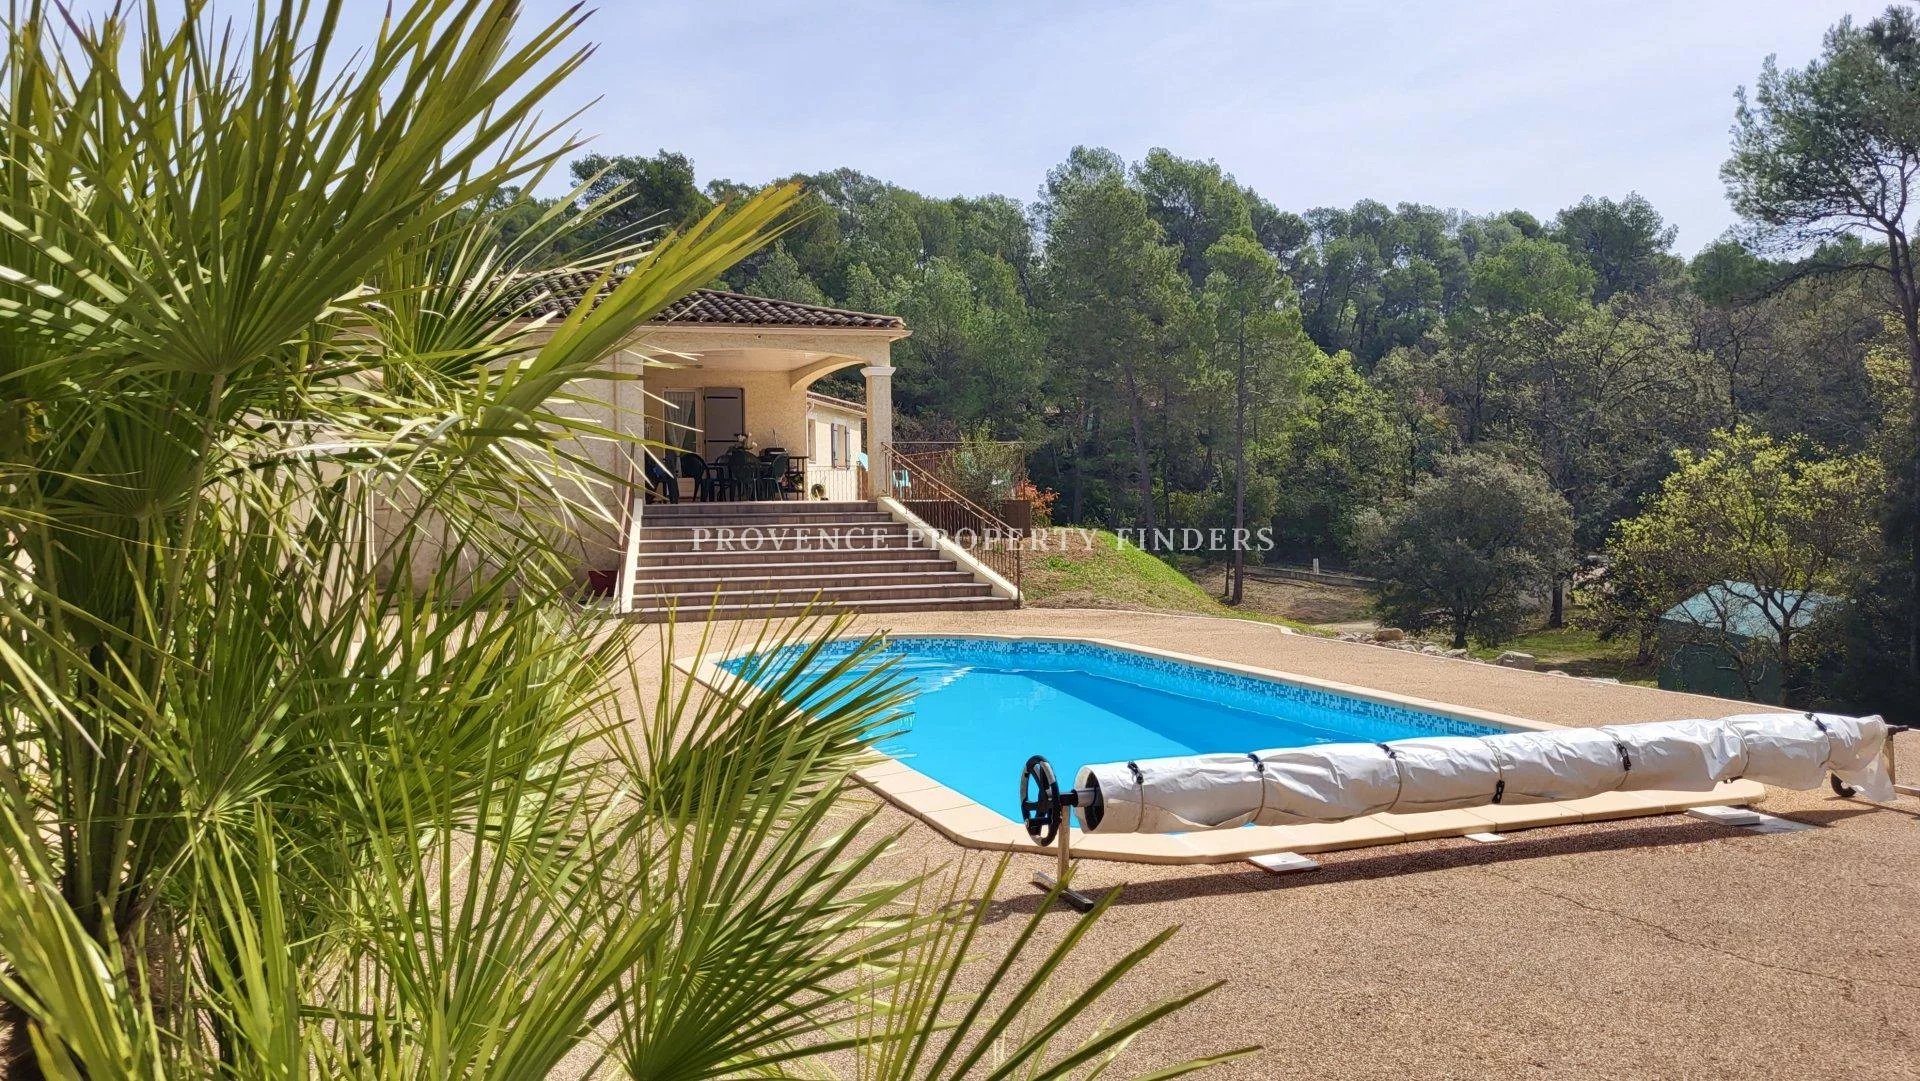 Villa avec 4 chambres, studio, piscine chauffée.